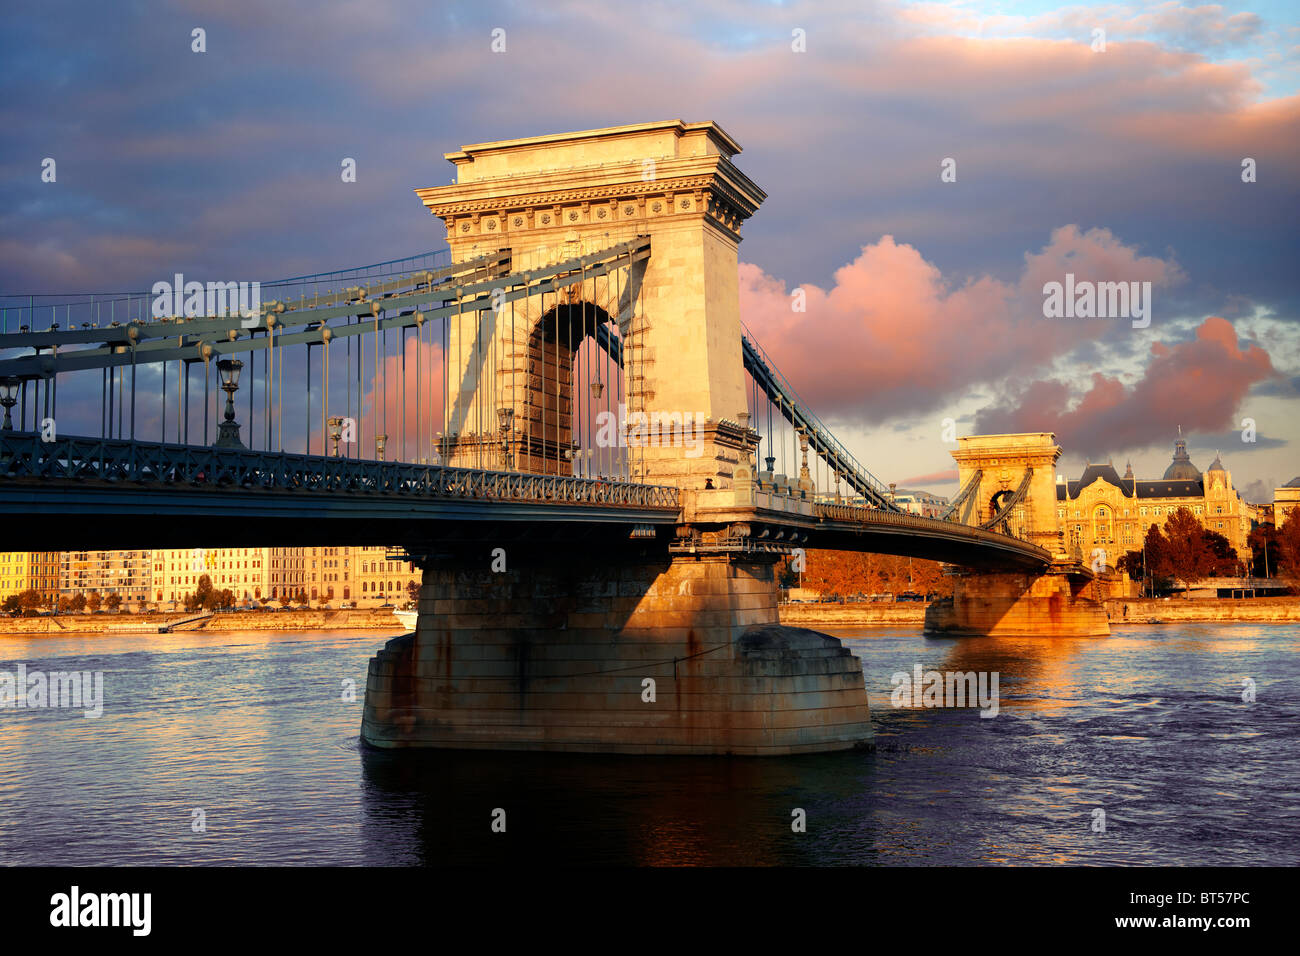 Szecheni Lanchid ( Chain Bridge ). Pont suspendu sur le Danube entre Buda et Pest. Budapest Hongrie Banque D'Images